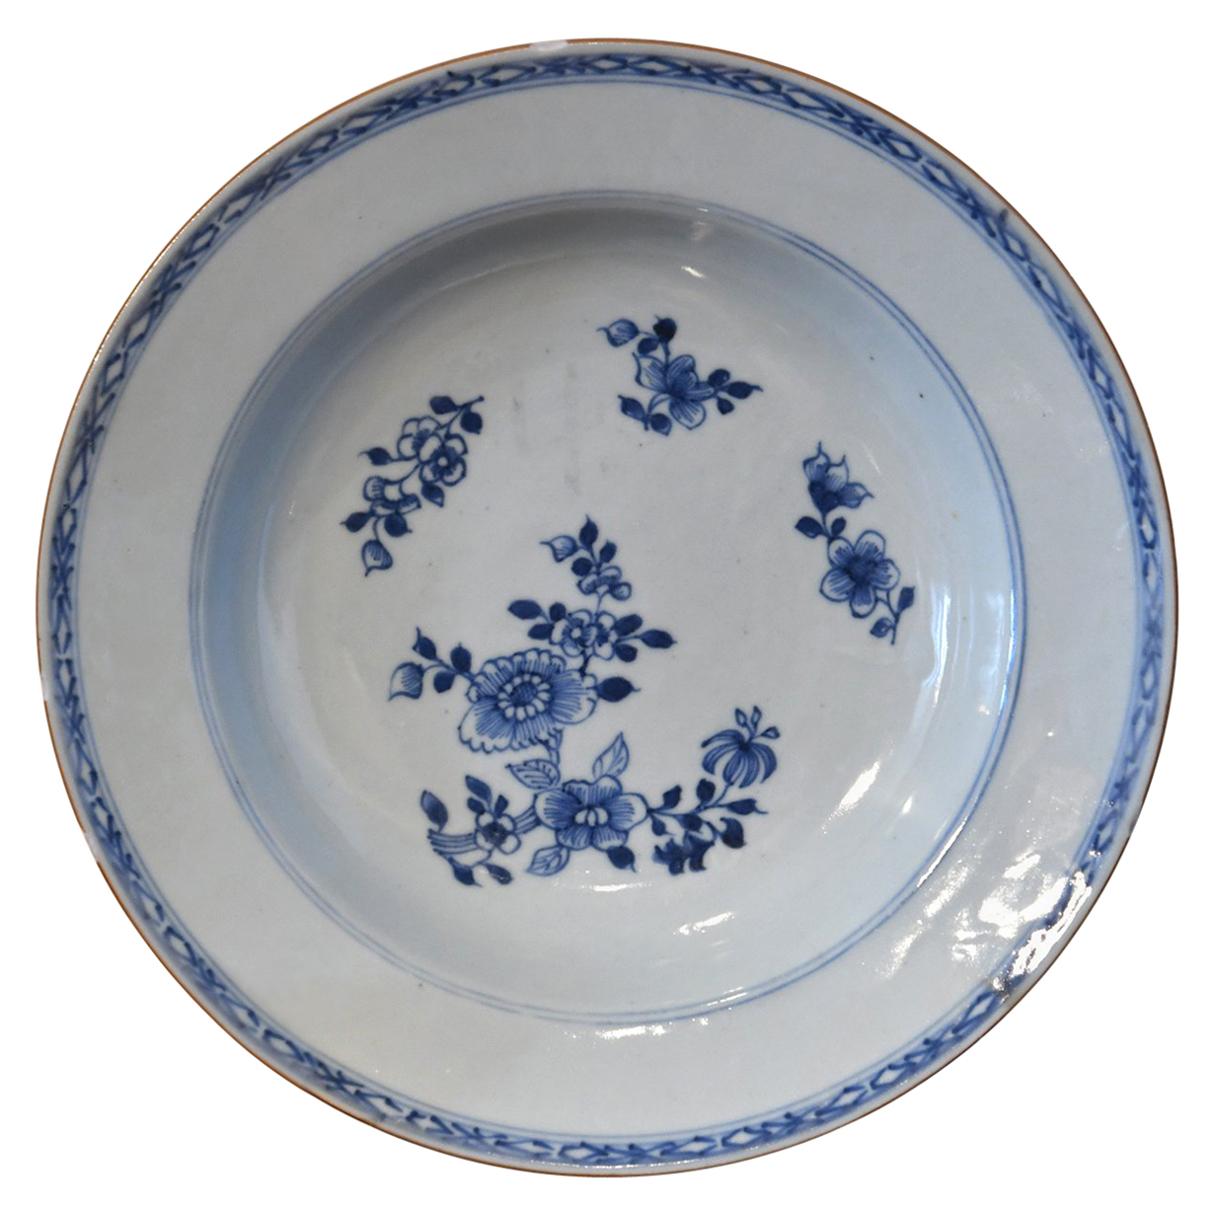 Bol peu profond bleu et blanc en porcelaine chinoise Qing Qianlong du 18ème siècle avec fleurs